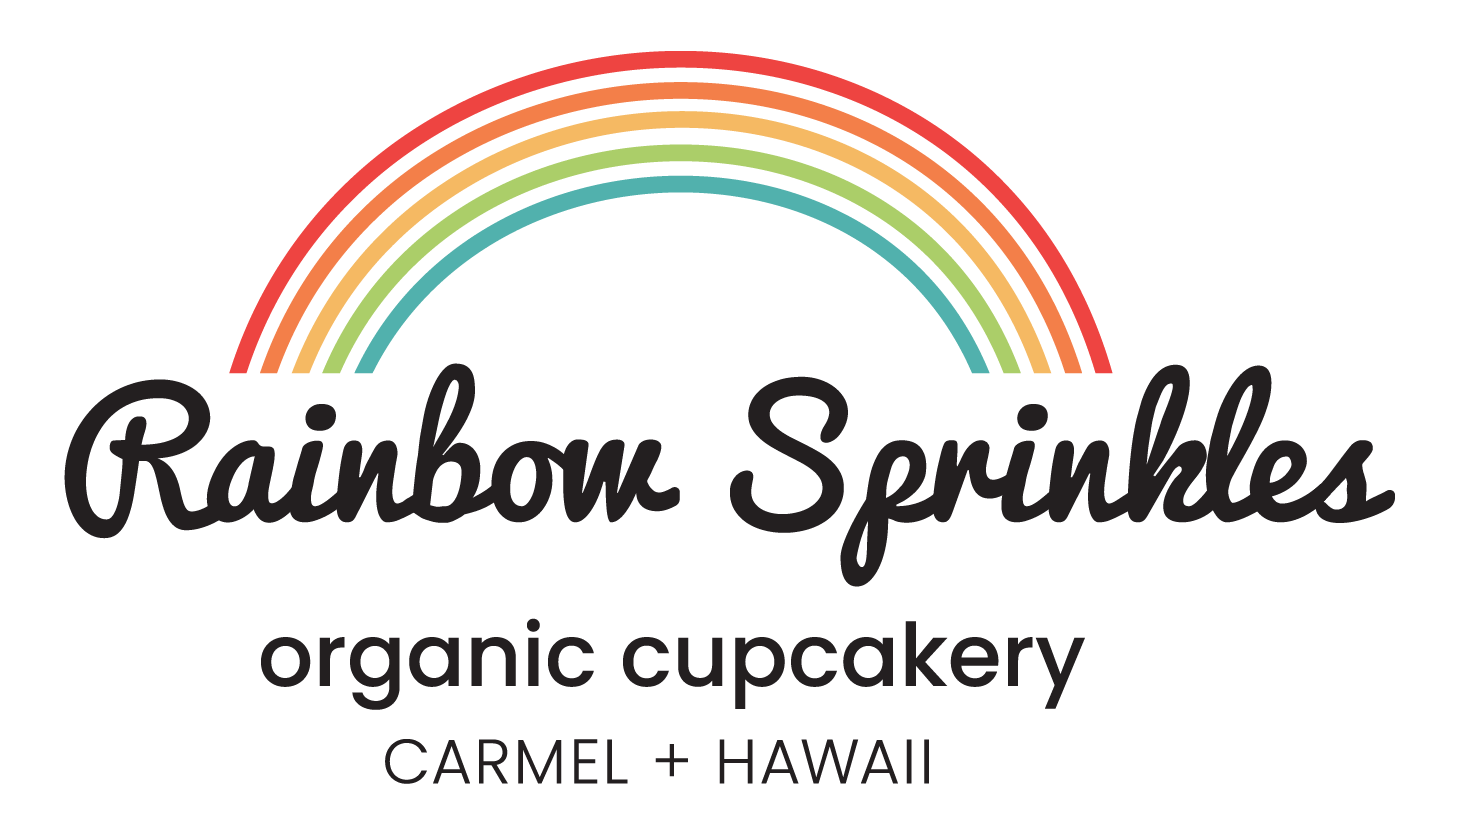 rainbow sprinkles organic cupcakery logo